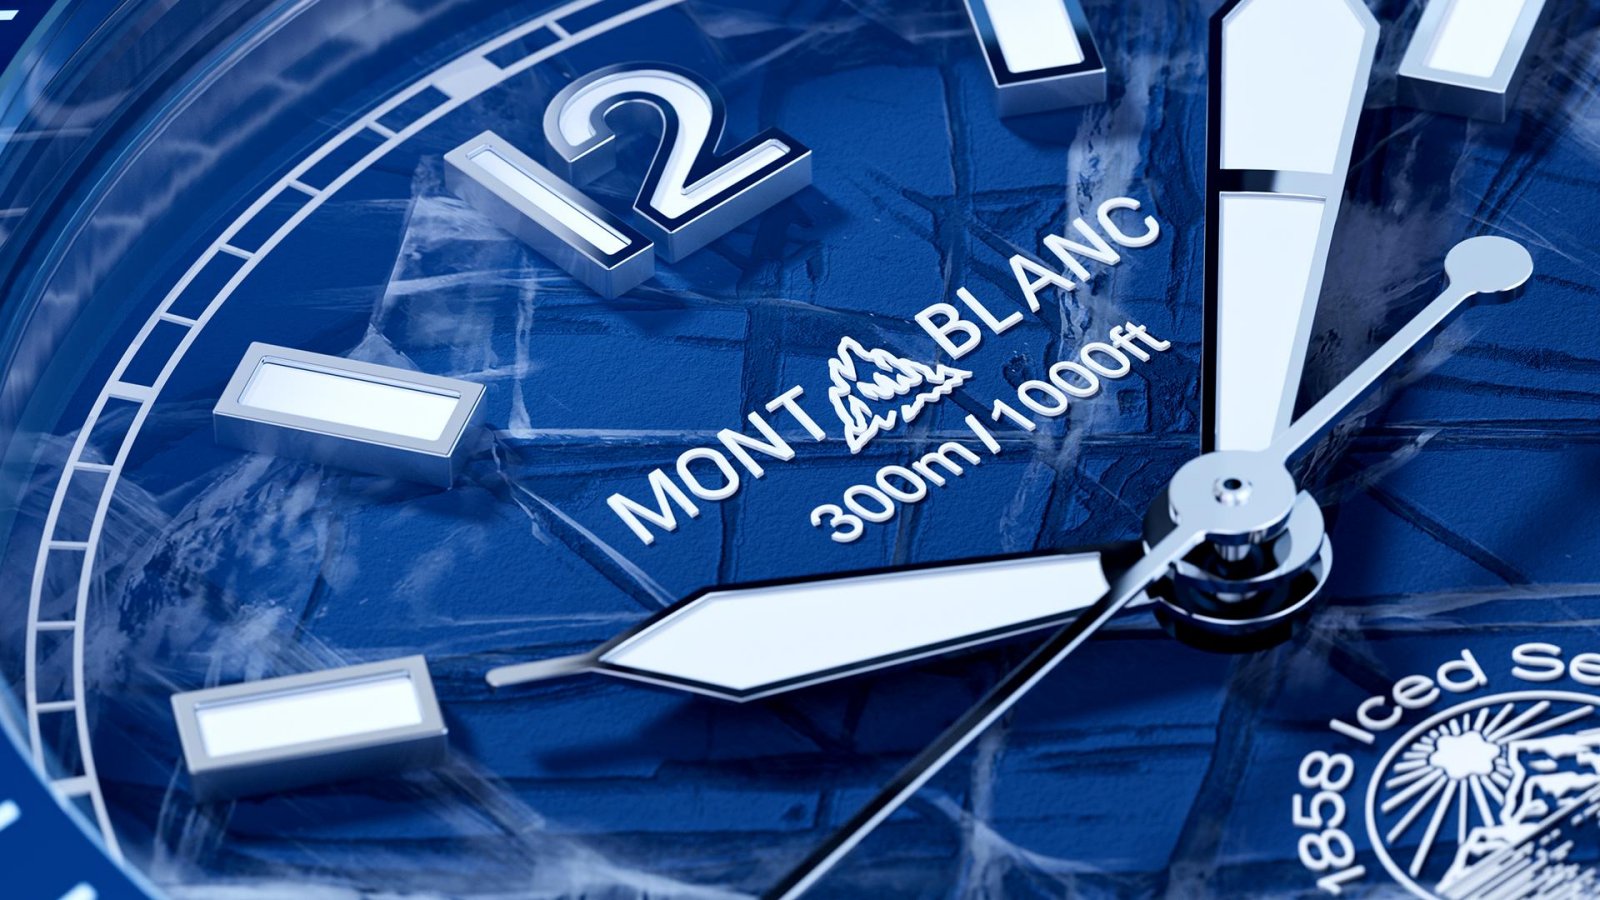 montblanc, bst glacier, bst montblanc, viết montblanc